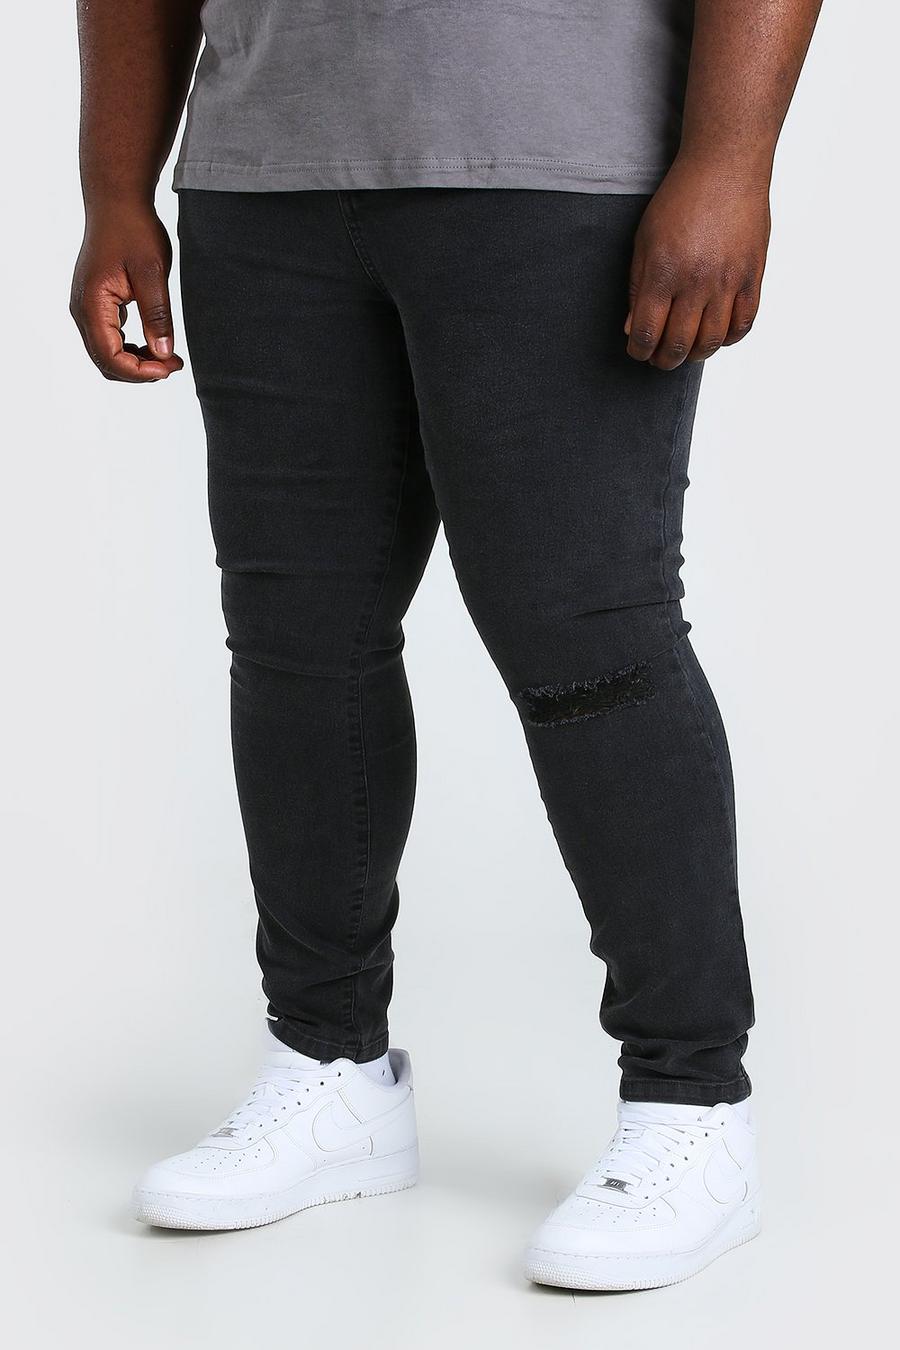 פחם מכנסי ג'ינס סופר סקיני עם ברך קרועה לגברים גדולים וגבוהים image number 1